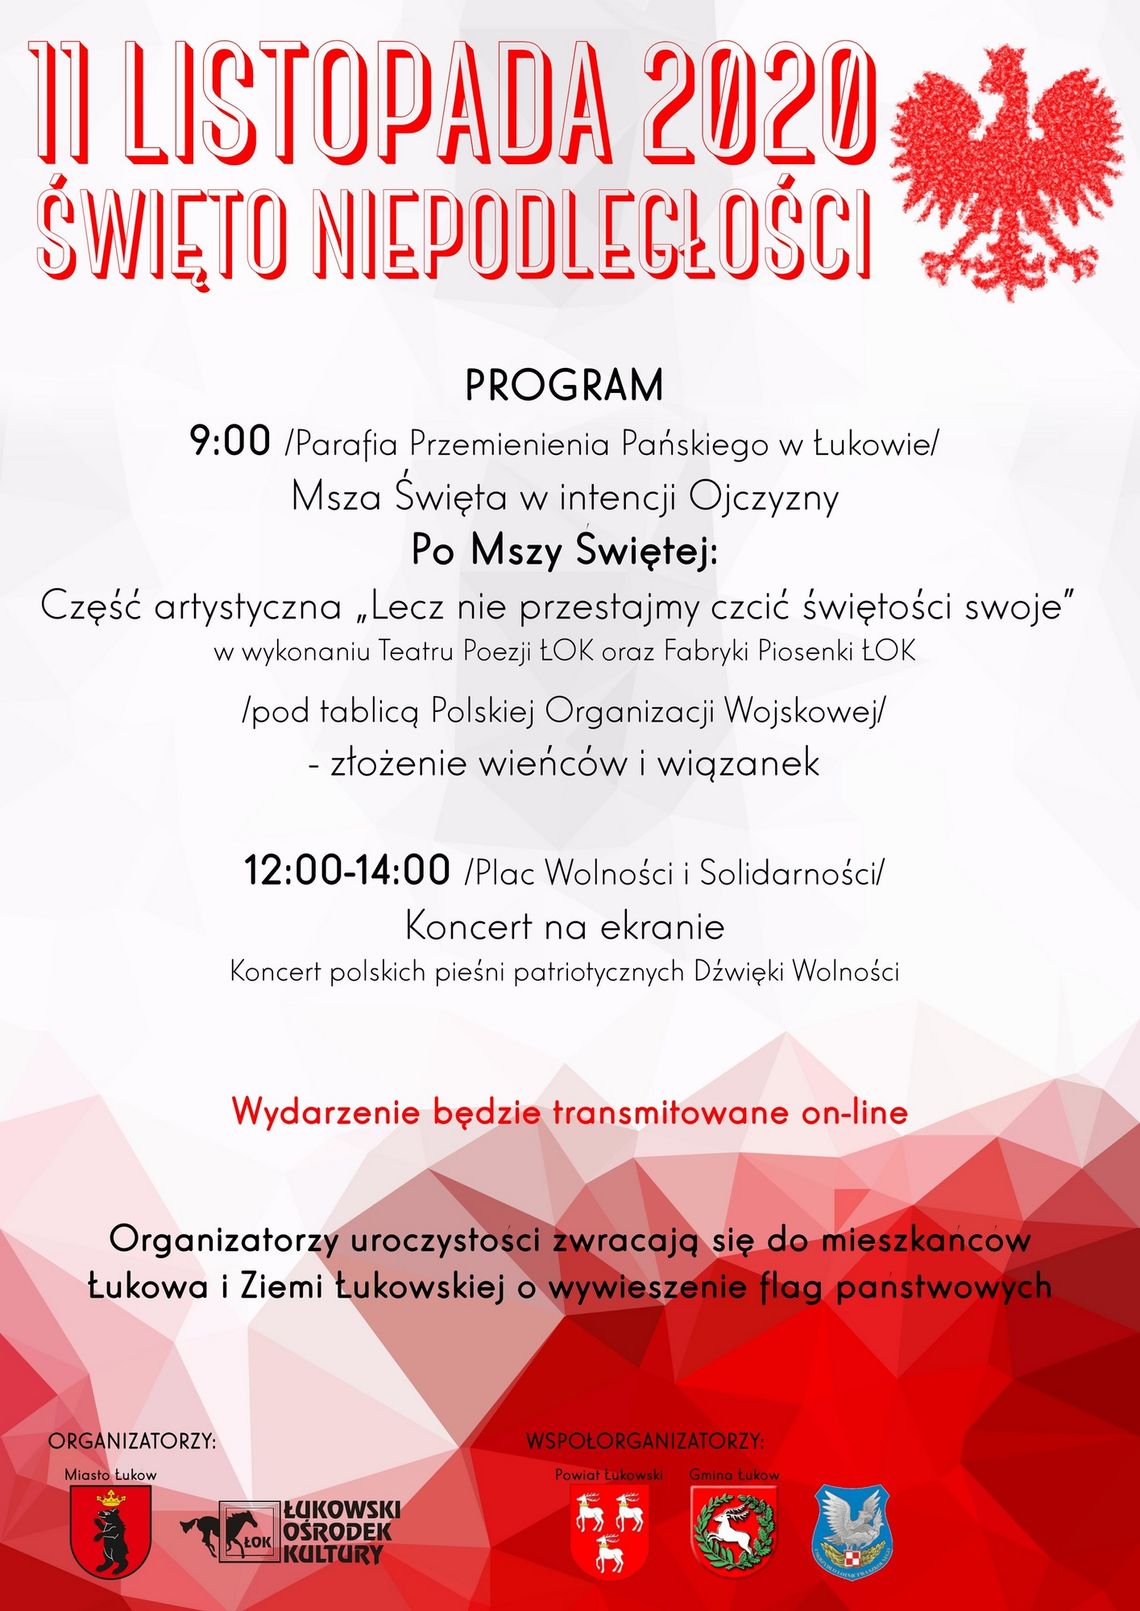 Obchody Narodowego Święta Niepodległości w Łukowie /11 listopada 2020